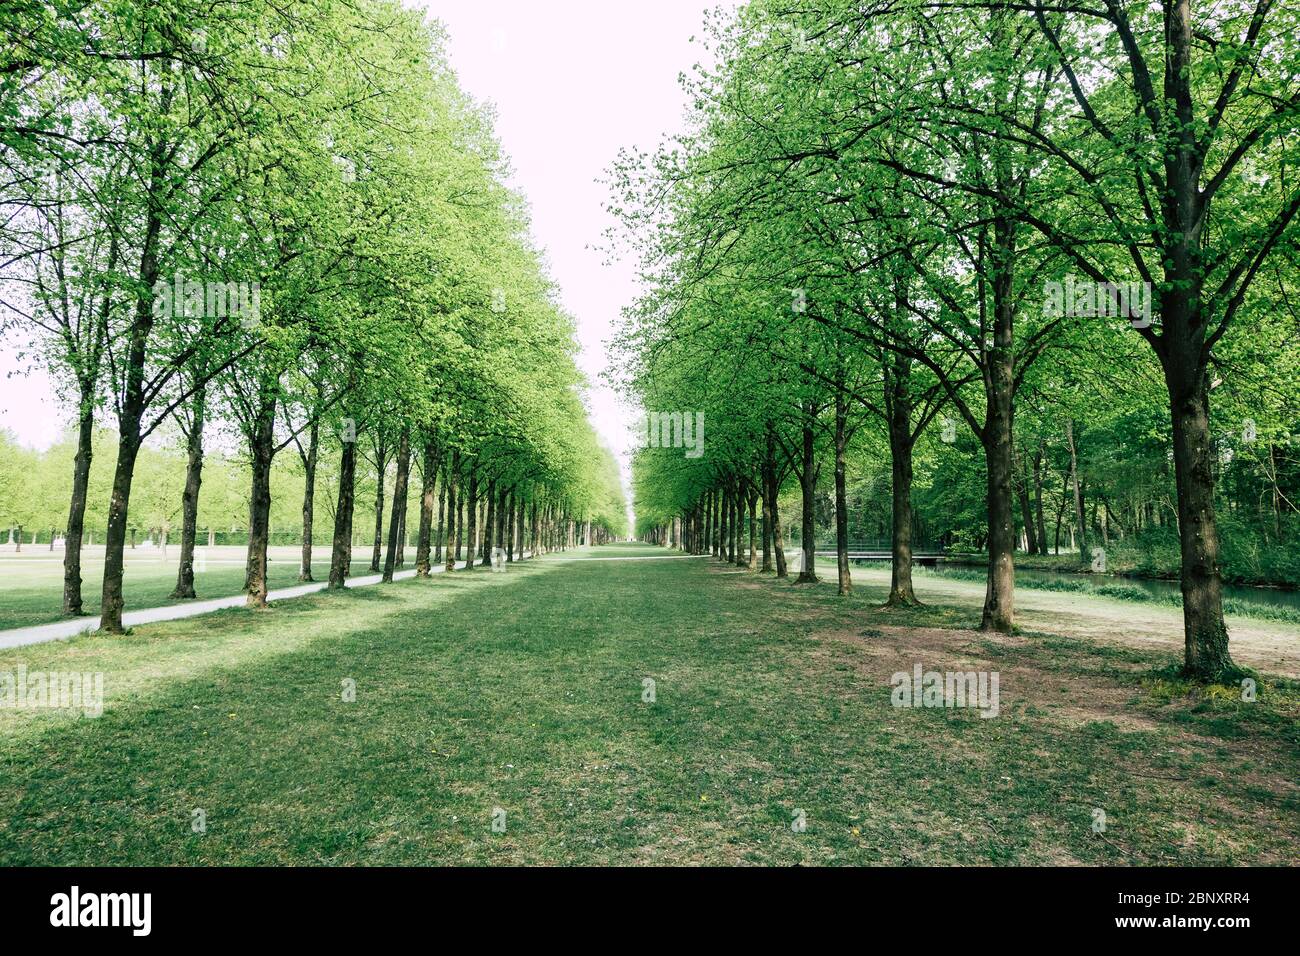 Avenue bordée d'arbres d'un chemin dans un parc Banque D'Images